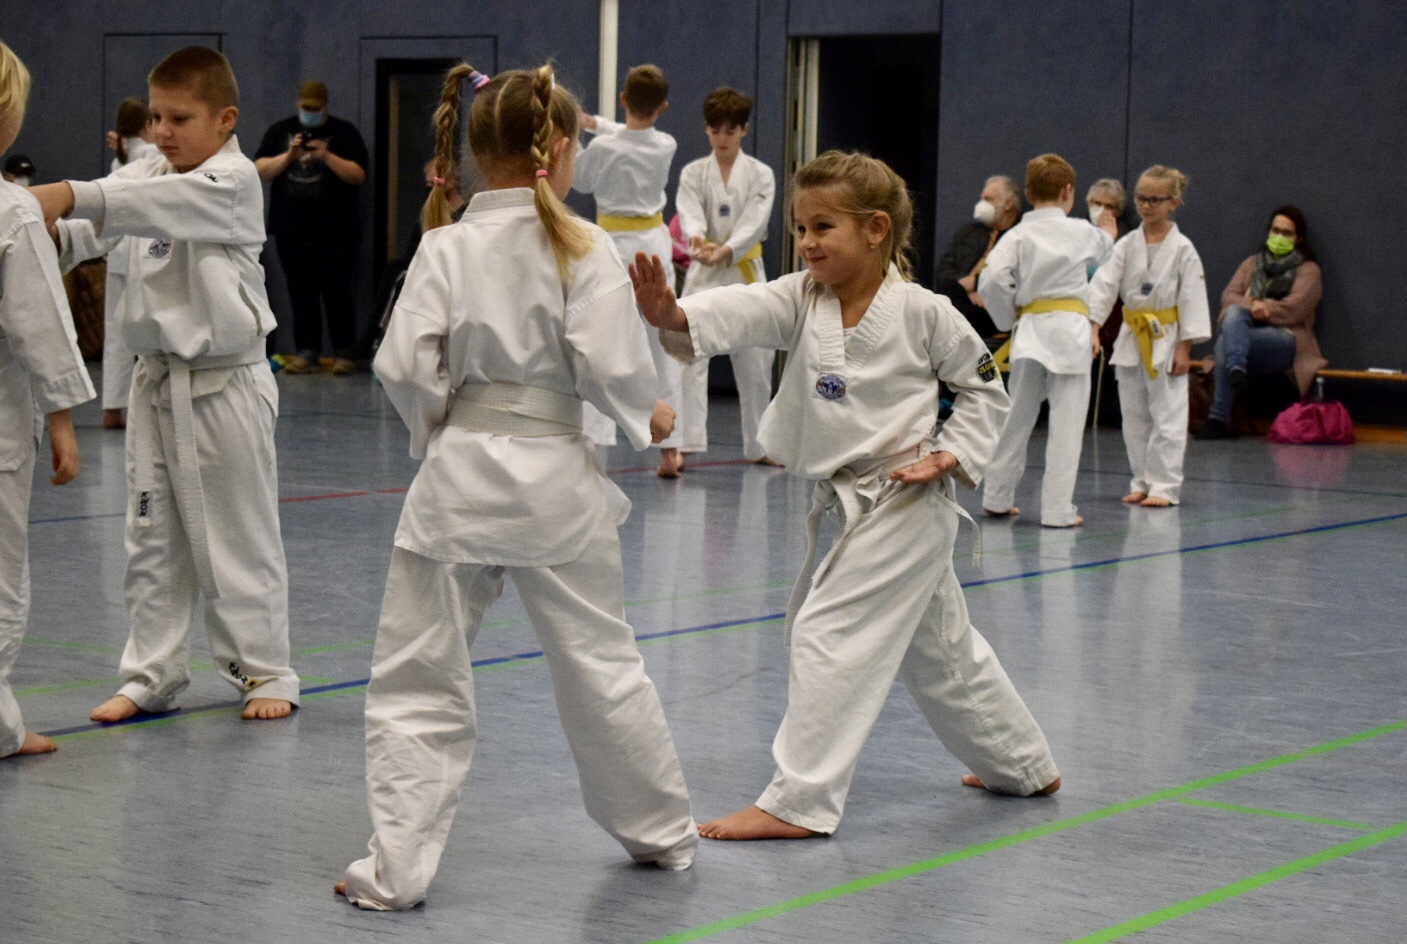 Die Taekwondo-Abteilung des TuS Mensfelden sucht neue Taekwondo-Sportler!